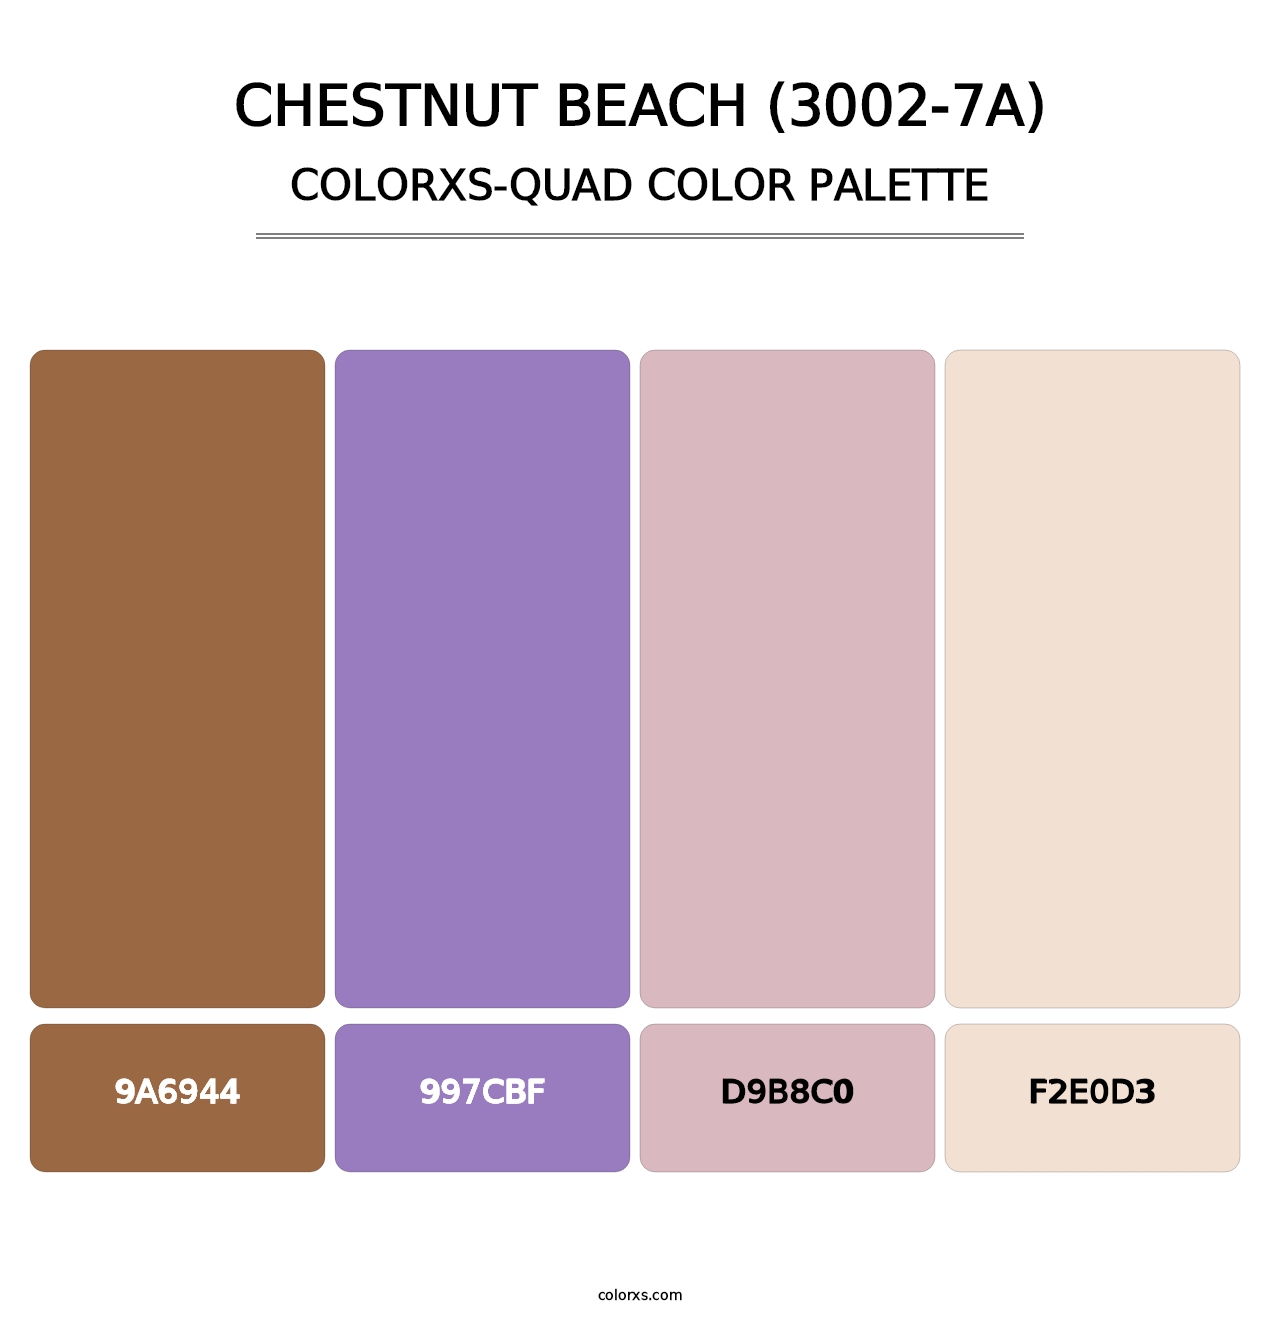 Chestnut Beach (3002-7A) - Colorxs Quad Palette